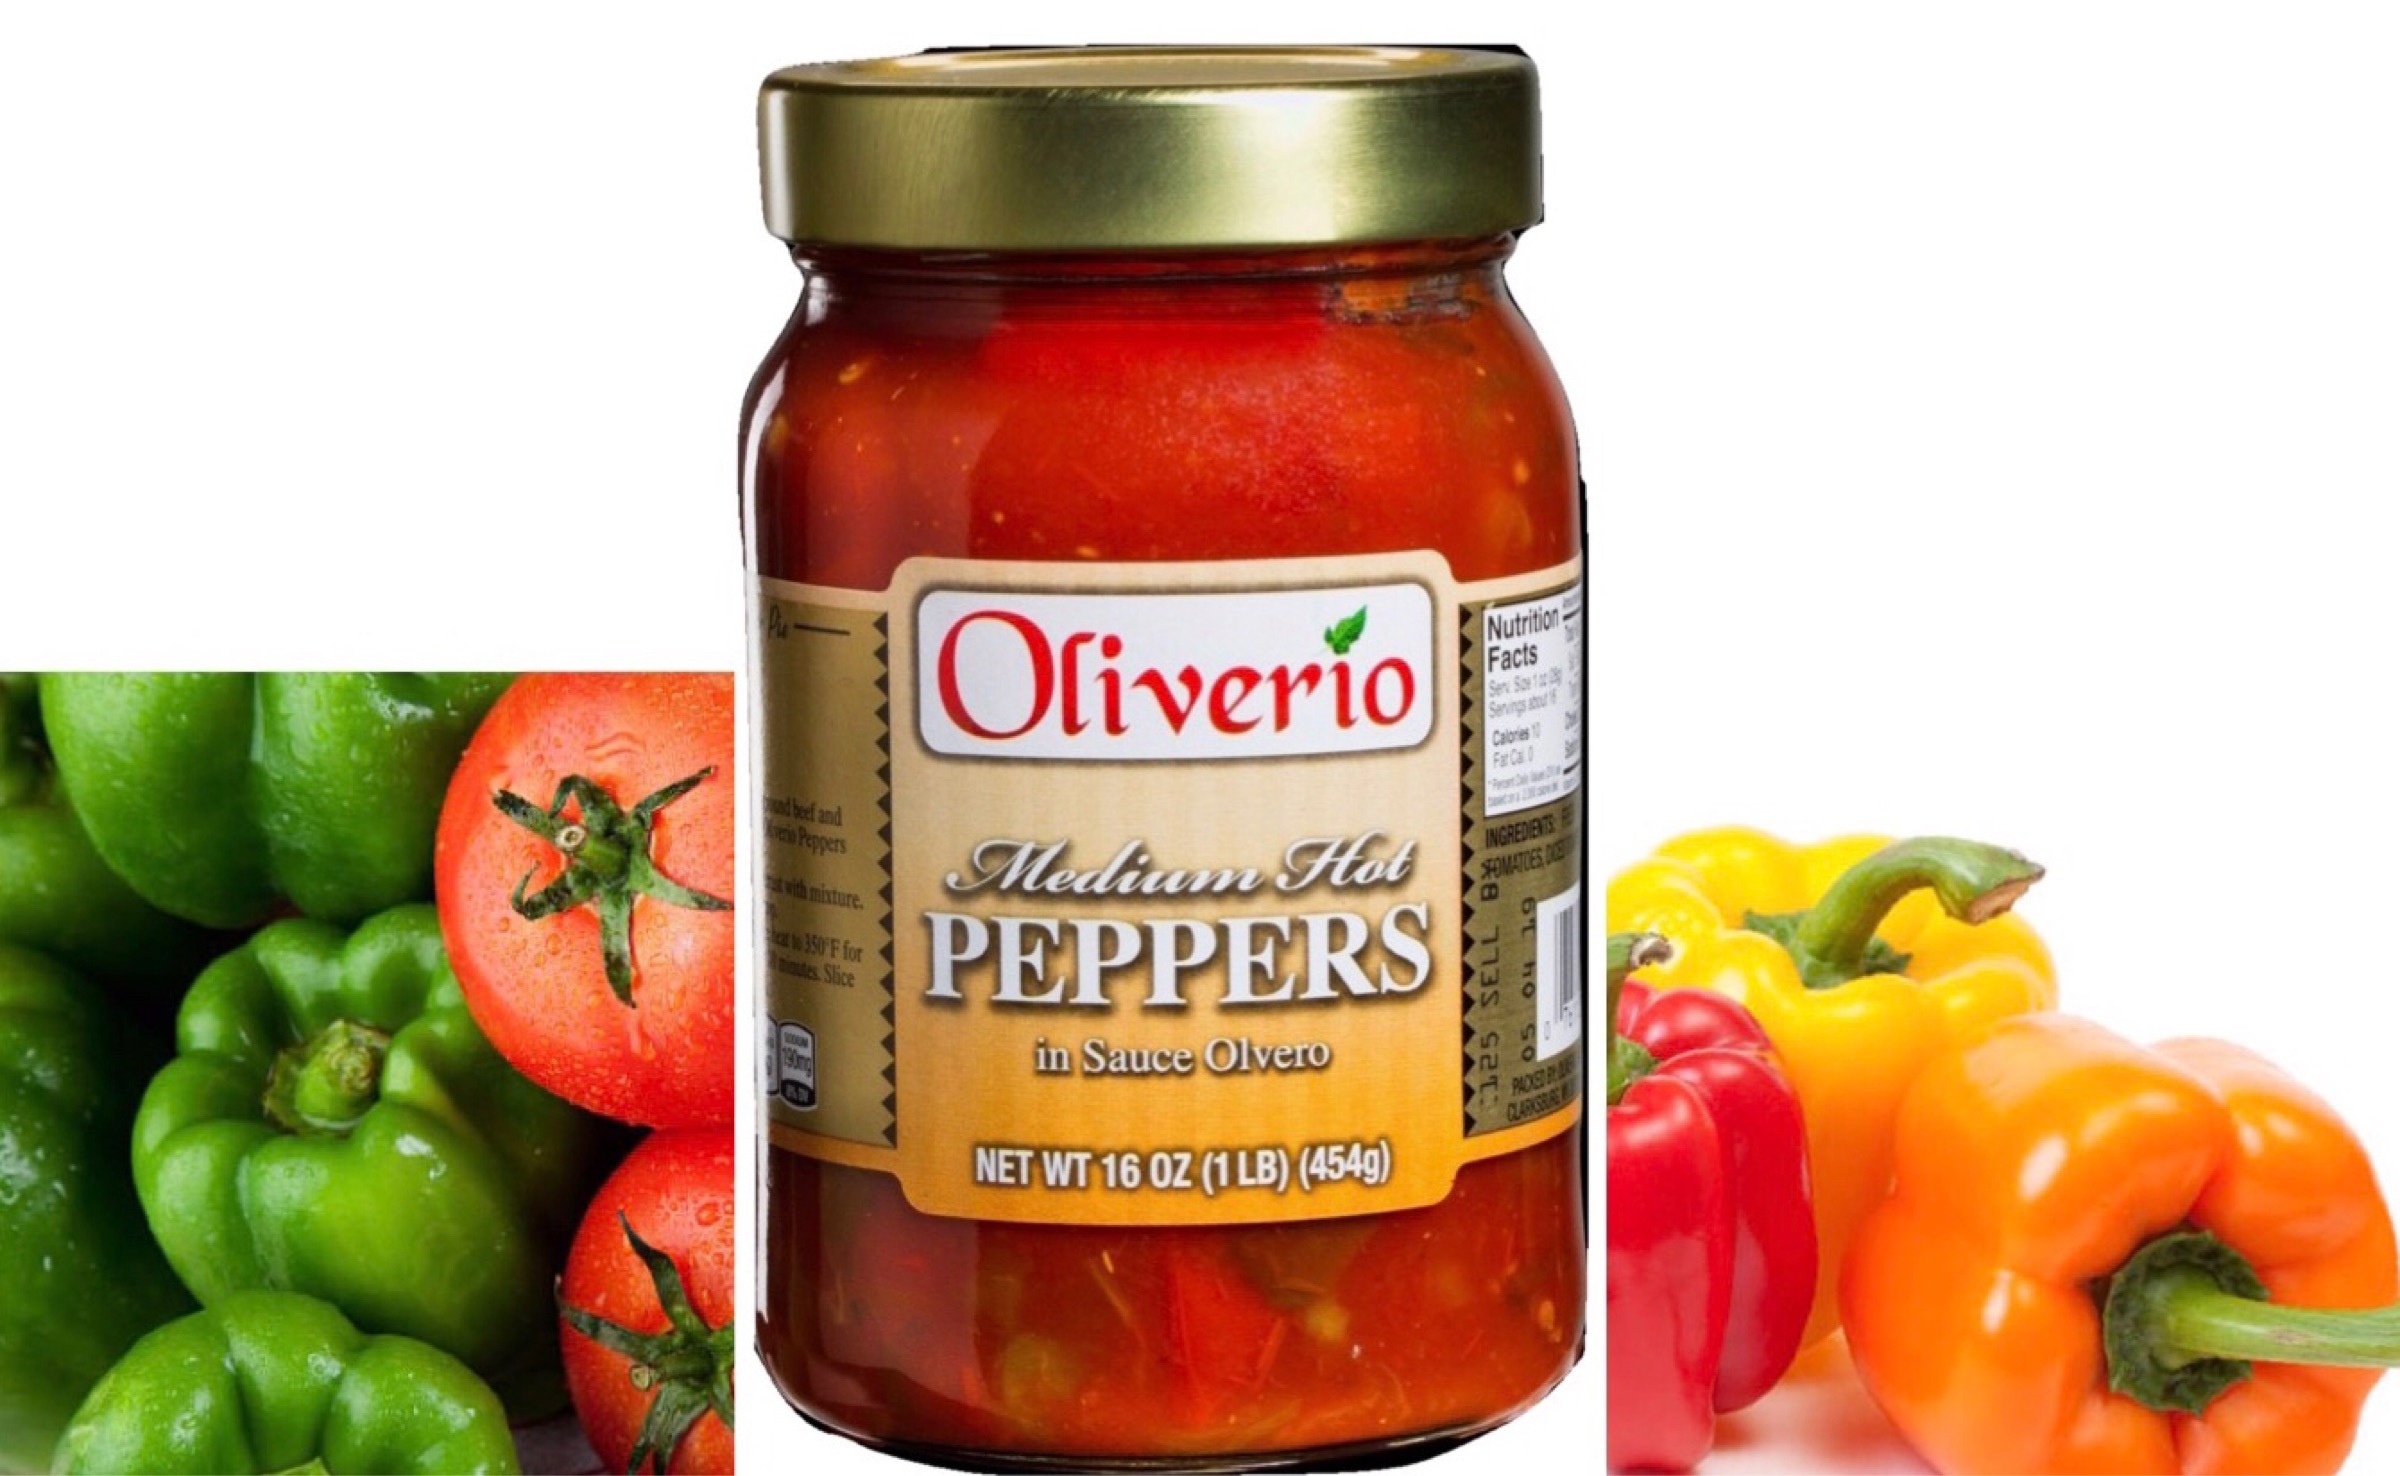 Oliverio Medium Hot Peppers in Sauce Olivero